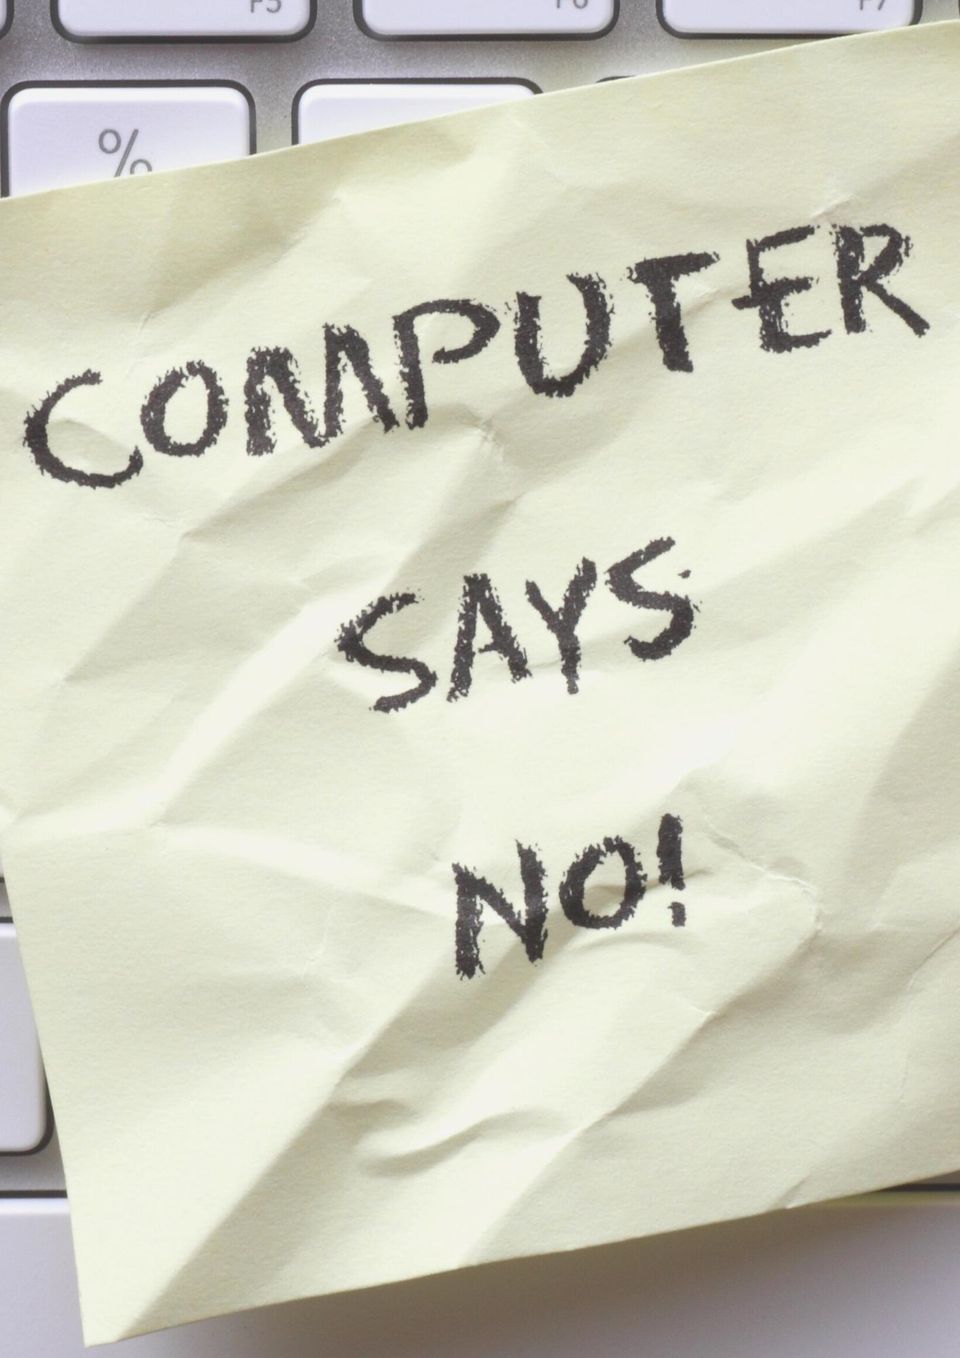 Gul seddel med teksten "Computer says no" liggende på tastatur